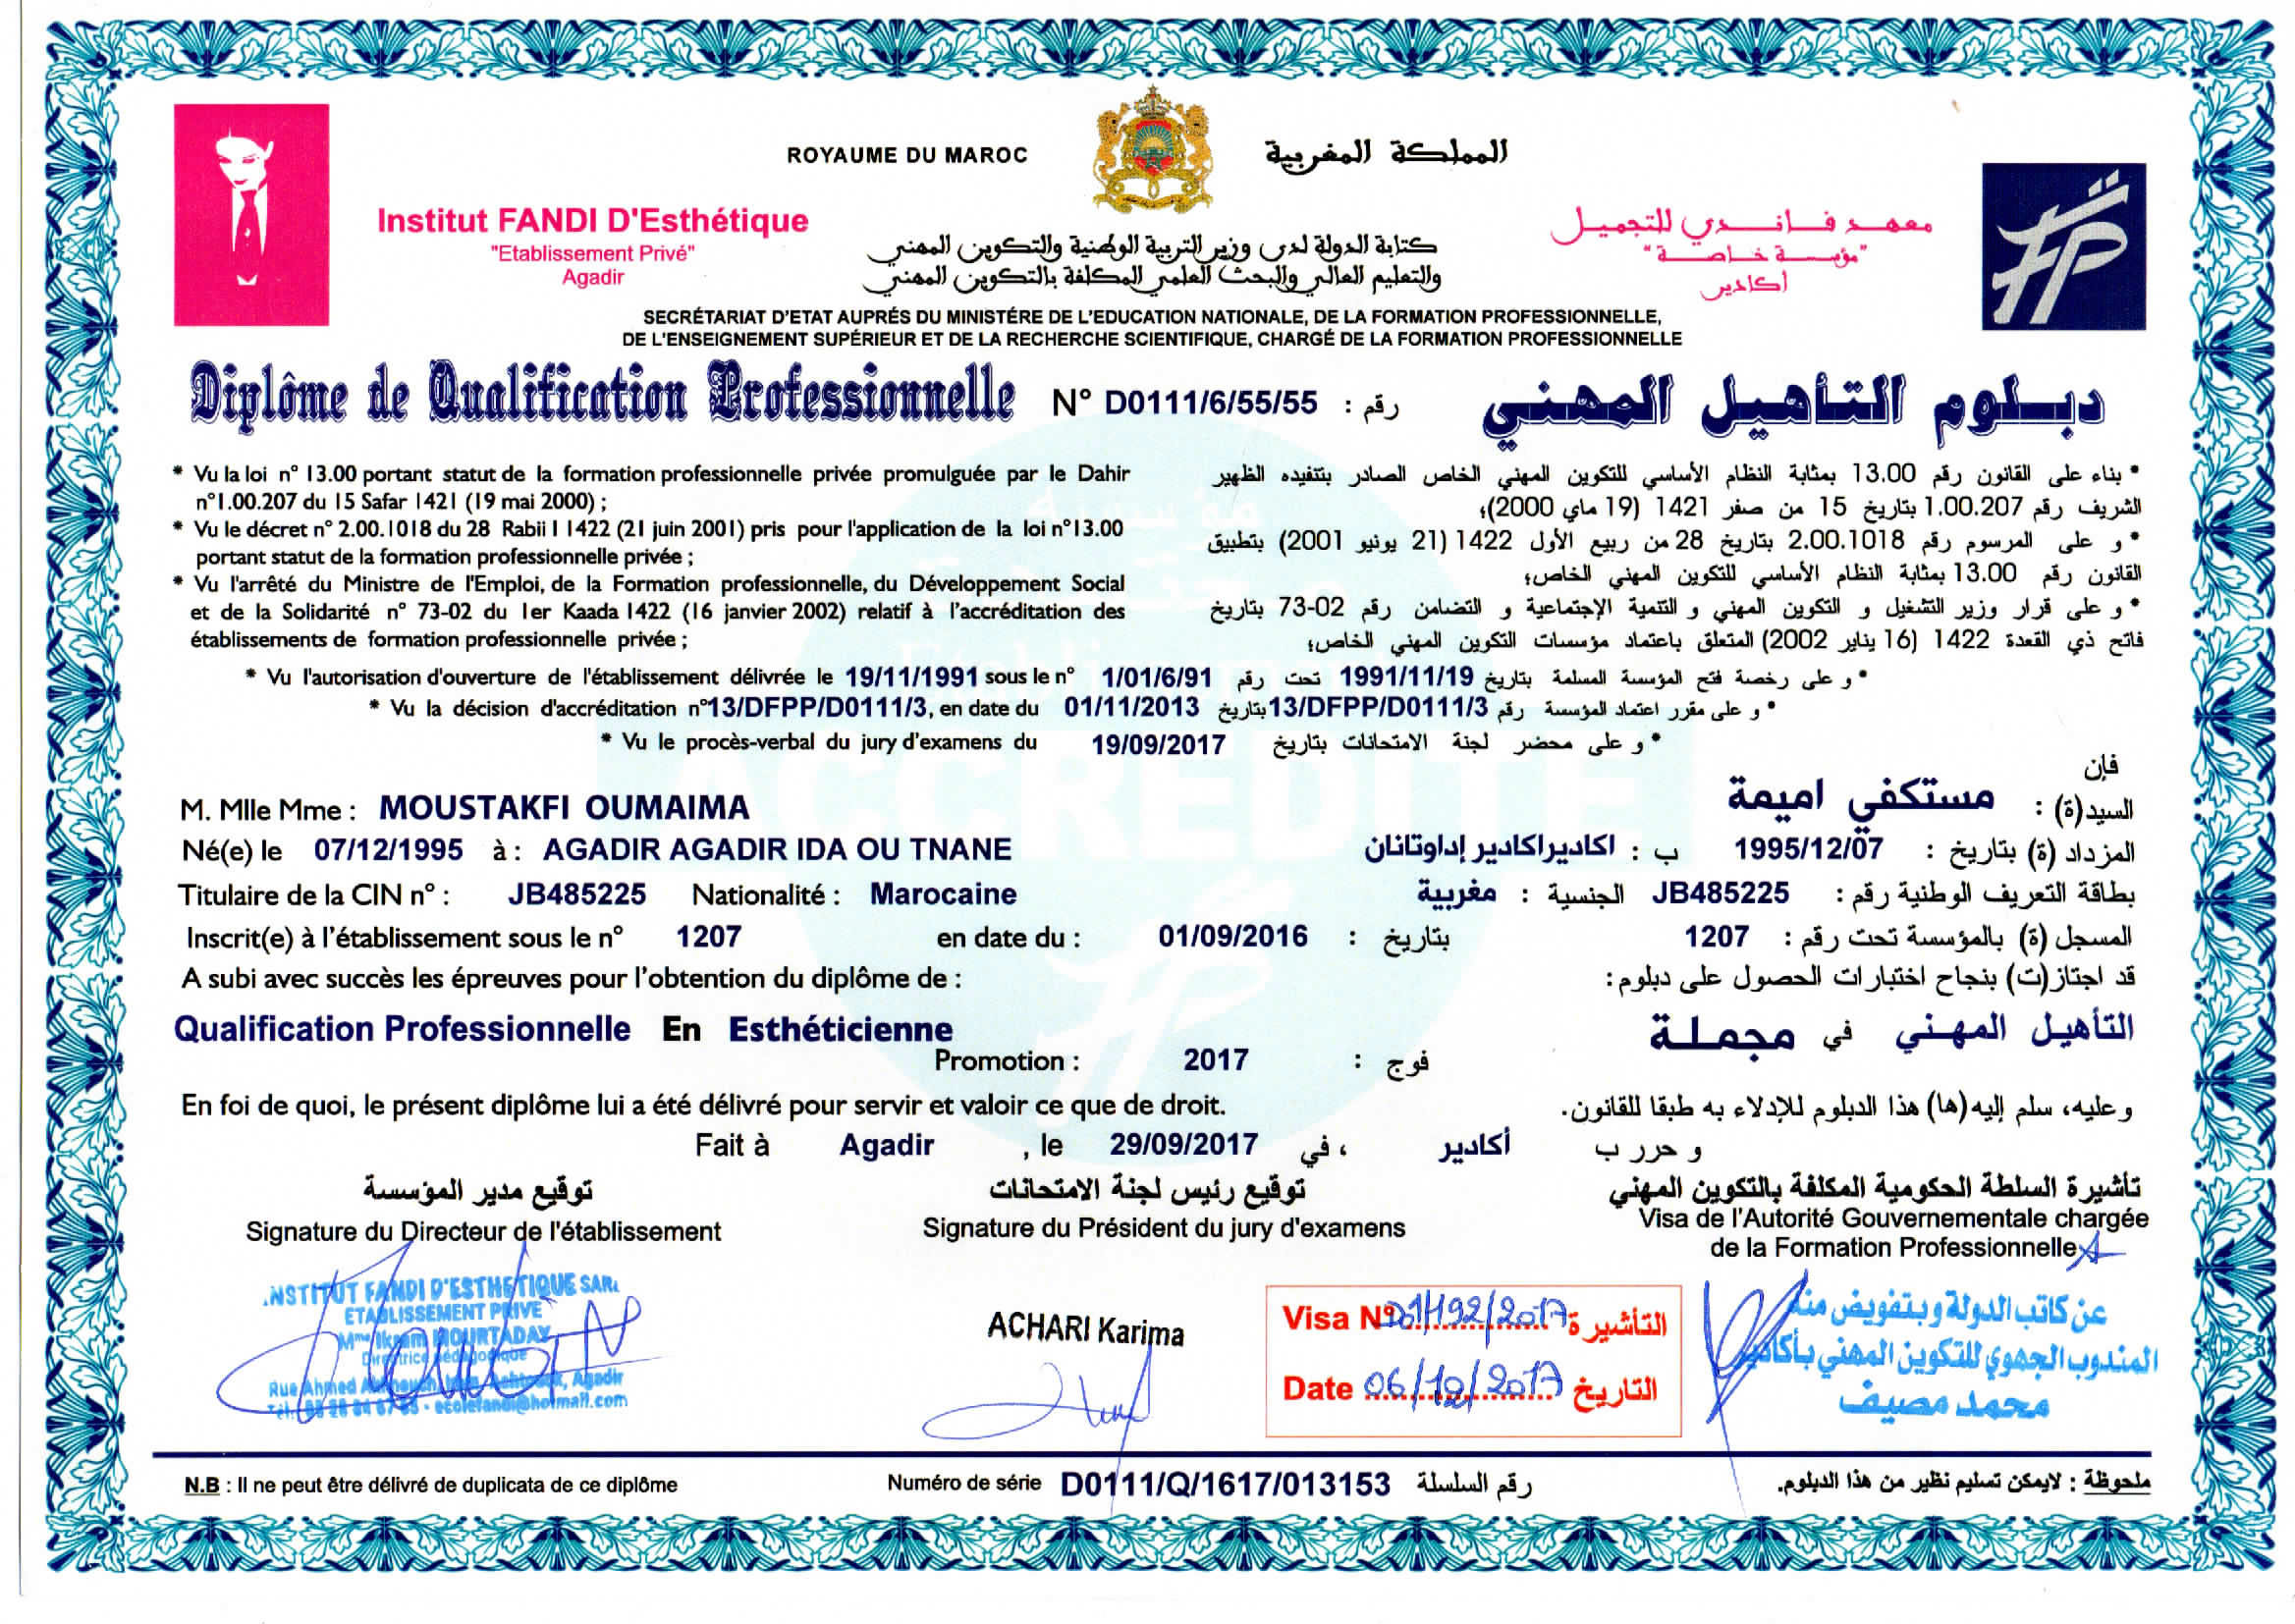 Diploma de Qualification Professionnelle en Estheticienne